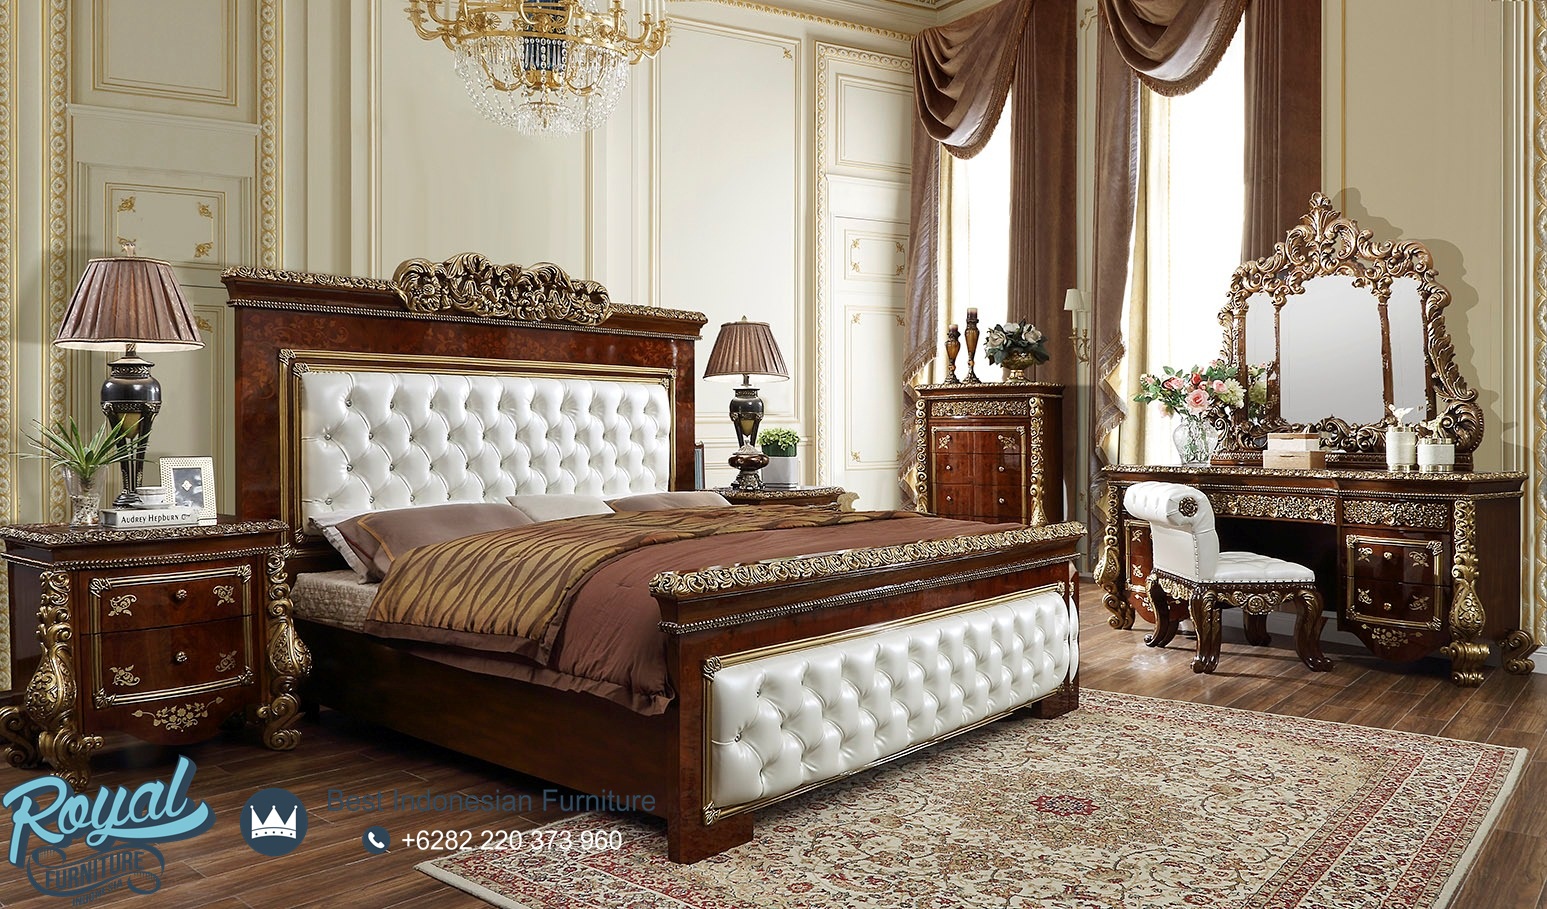 Model Set Tempat Tidur Mewah Klasik Kayu Jati Ukiran Jepara Terbaru Veronica Royal Furniture